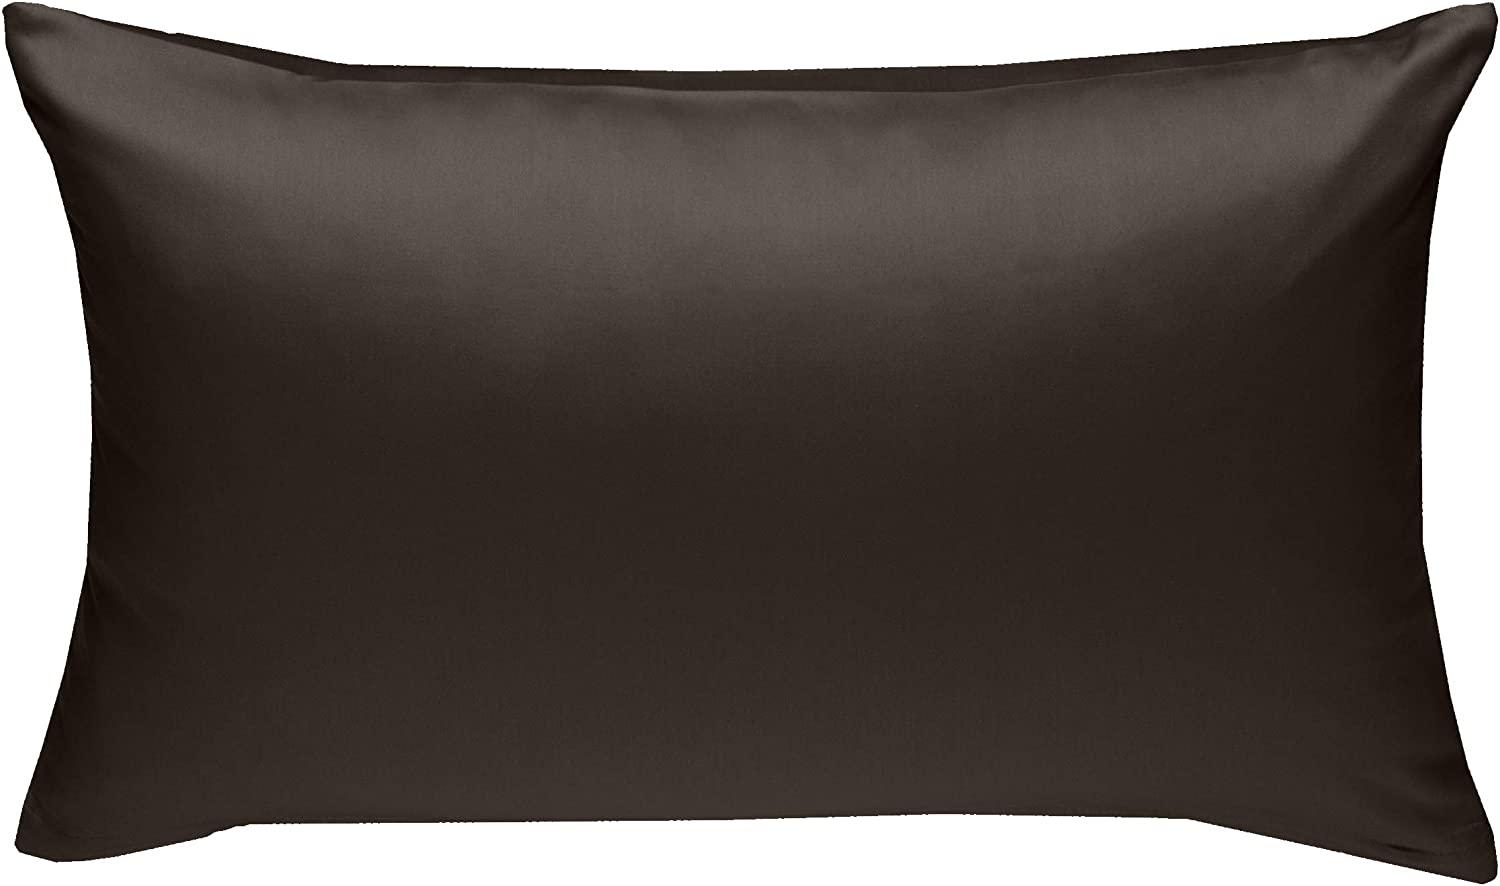 Bettwaesche-mit-Stil Mako-Satin / Baumwollsatin Bettwäsche uni / einfarbig Espresso Braun Kissenbezug 50x70 cm Bild 1